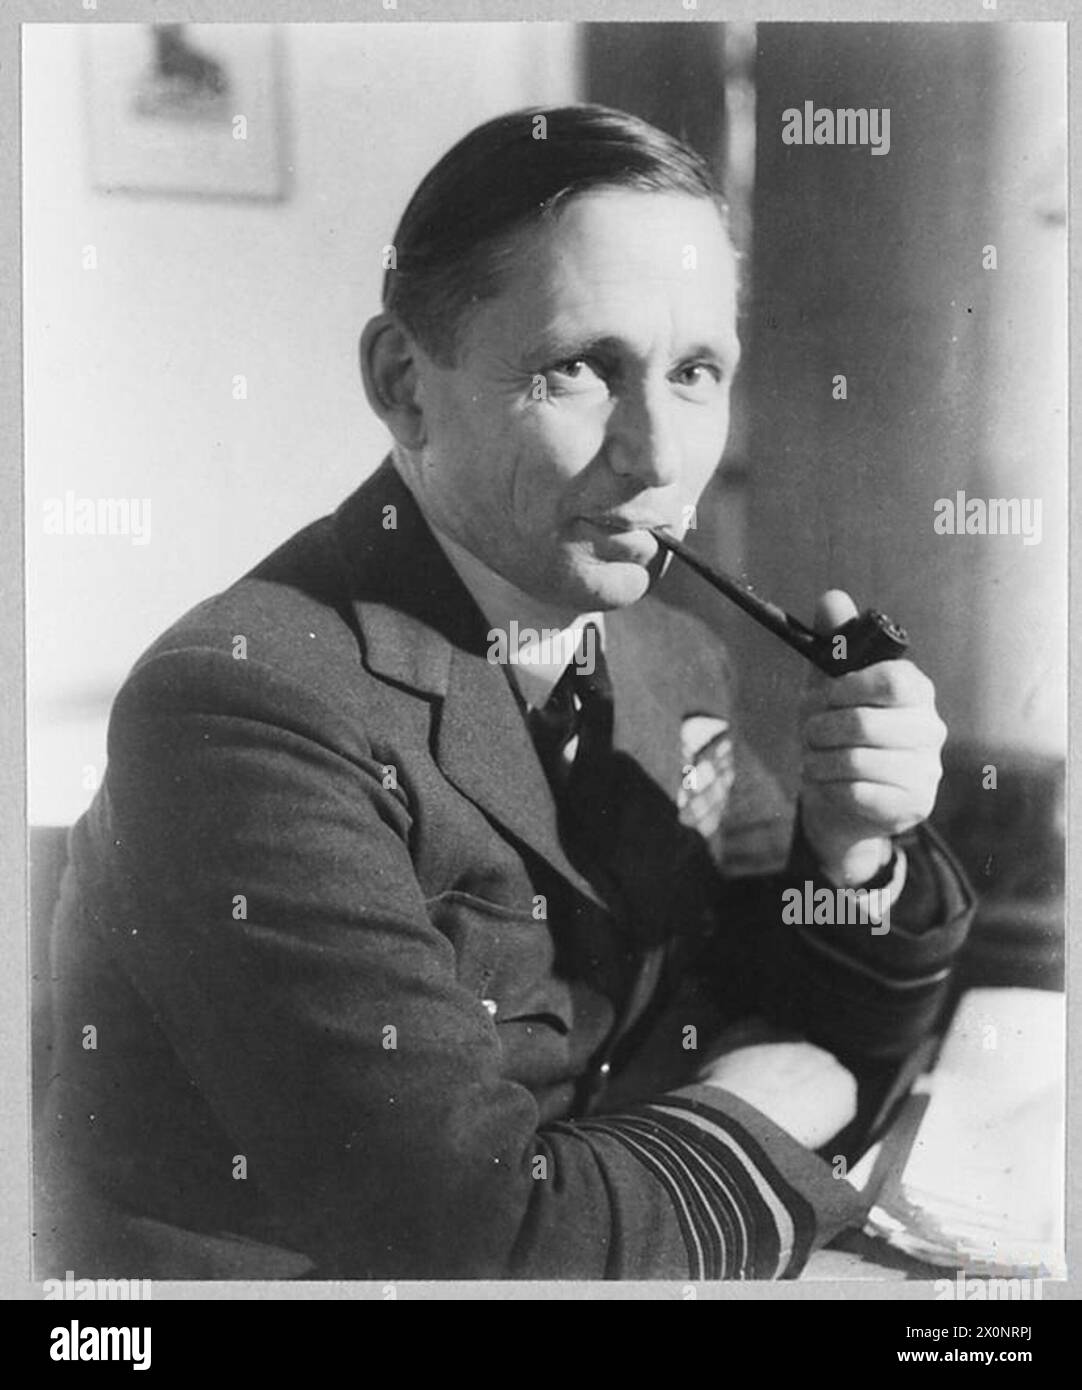 MARESCIALLO DELLA R.A.F. SIR ARTHUR TEDDER, G.C.B. - IMMAGINE PUBBLICATA NEL 1945. Negativo fotografico, Royal Air Force Foto Stock